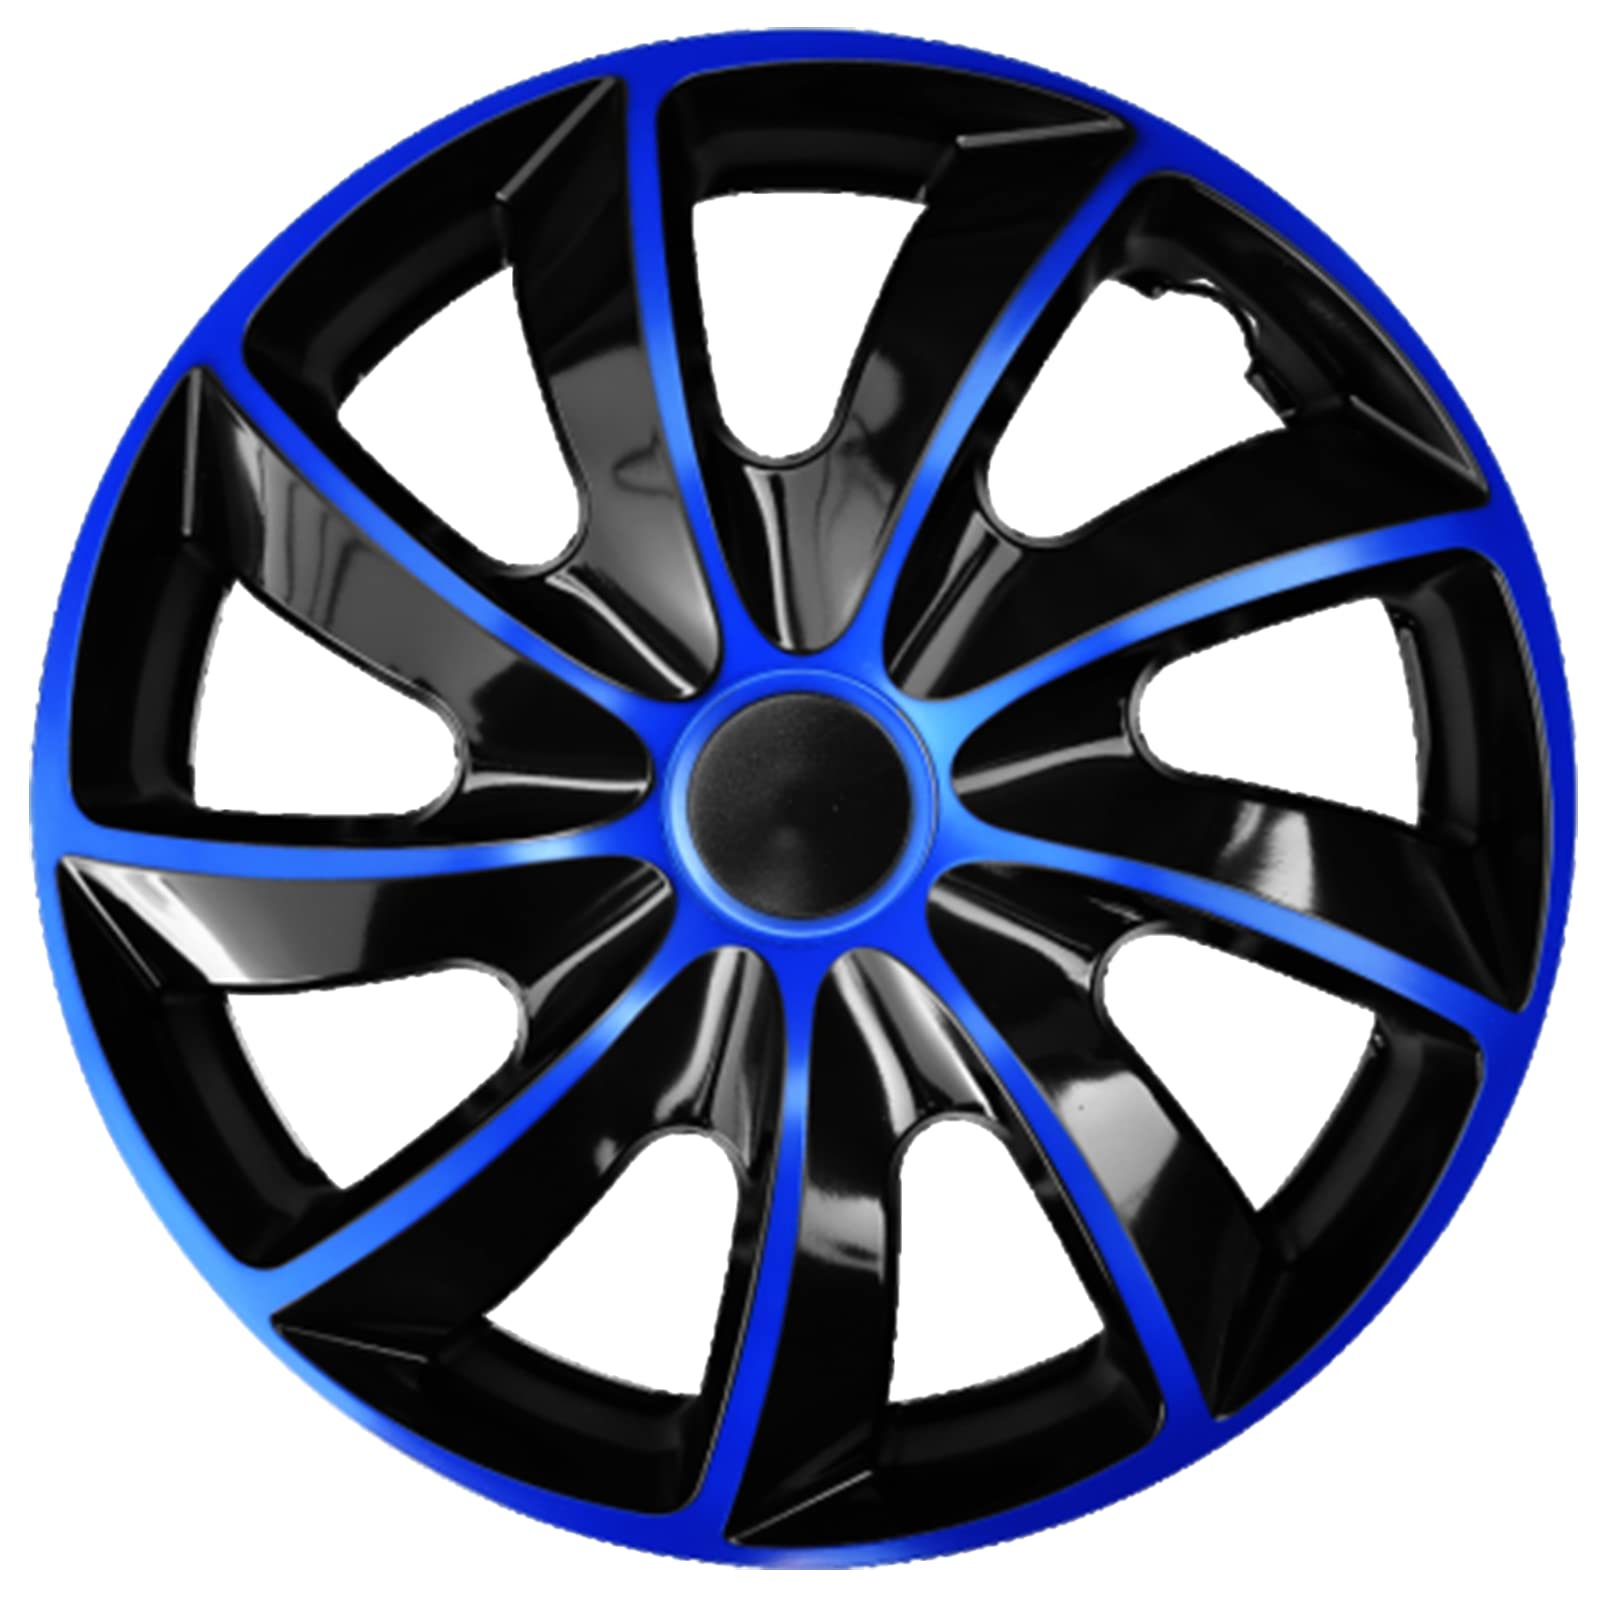 Ohmtronixx Quad Radkappen 14 Zoll 4er Set, blau-schwarz, Radzierblenden aus ABS Kunststoff von ohmtronixx